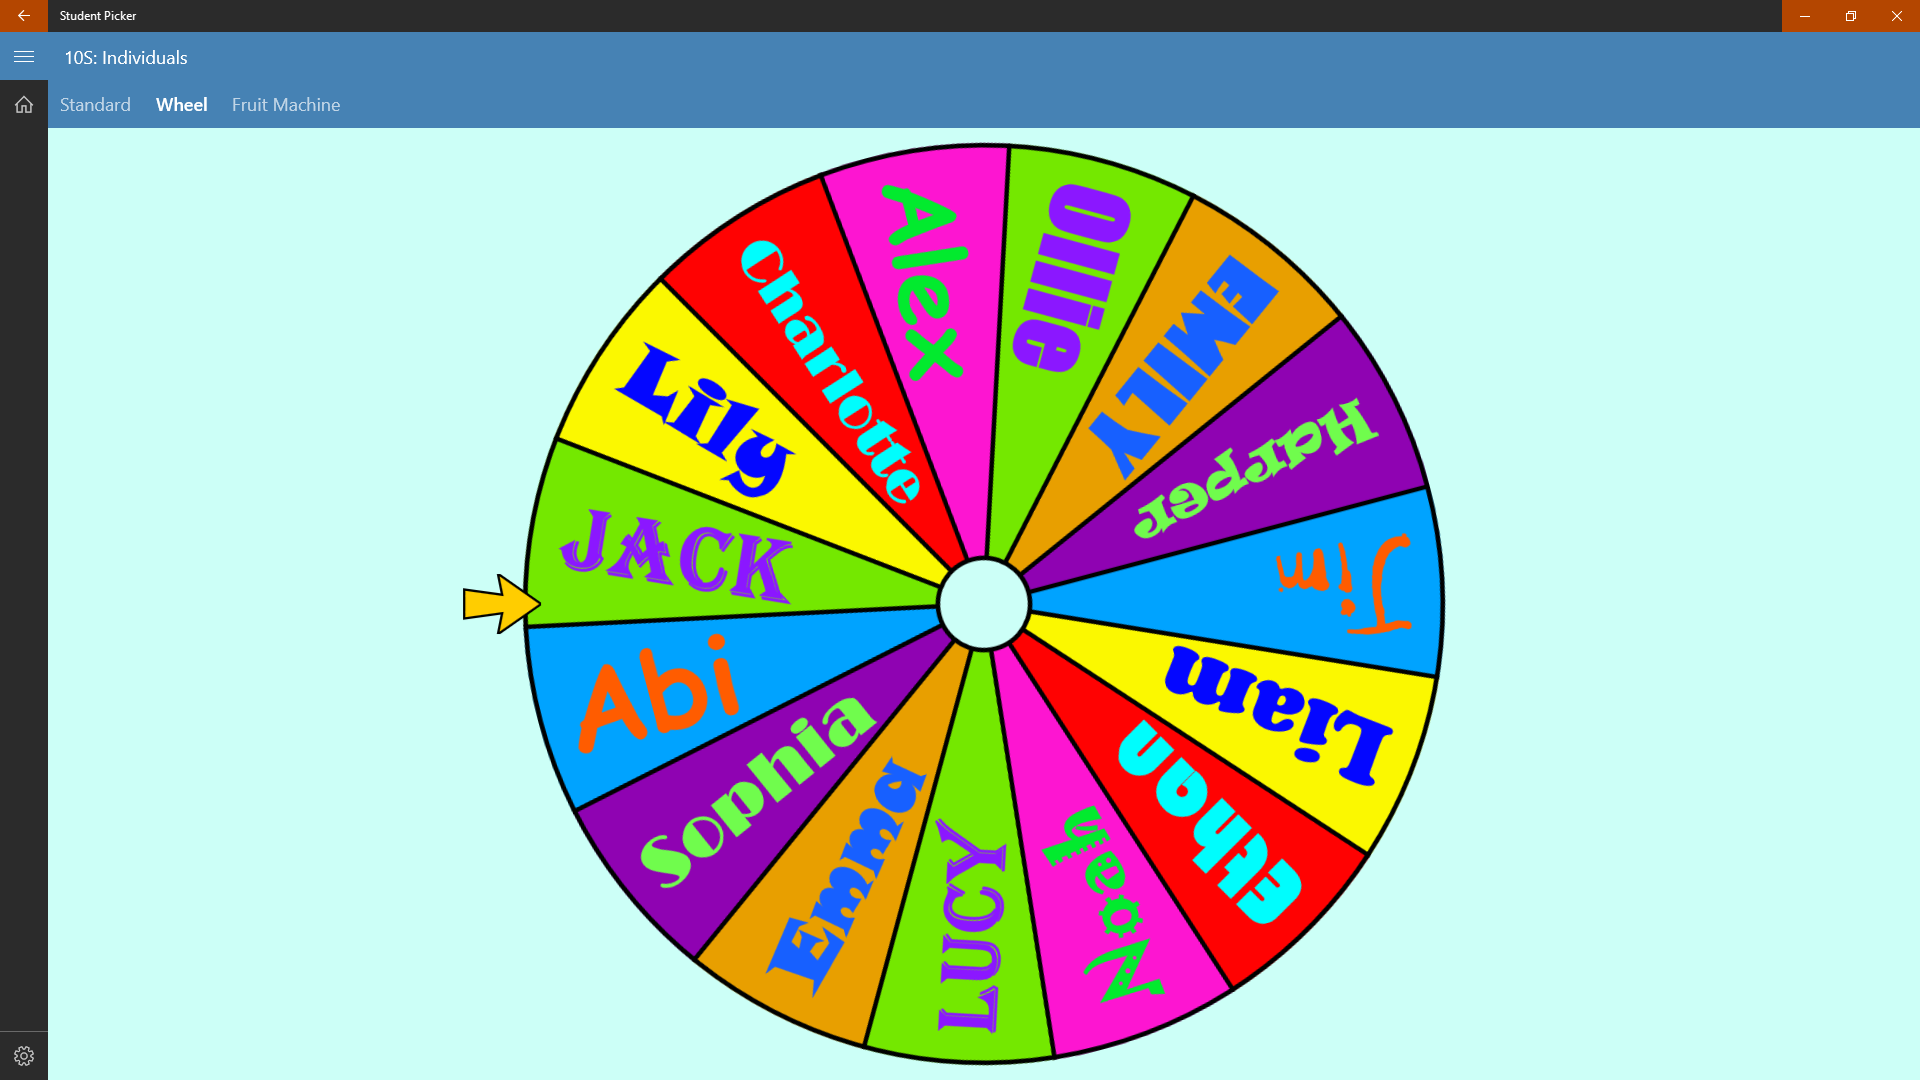 random name picker wheel instagram